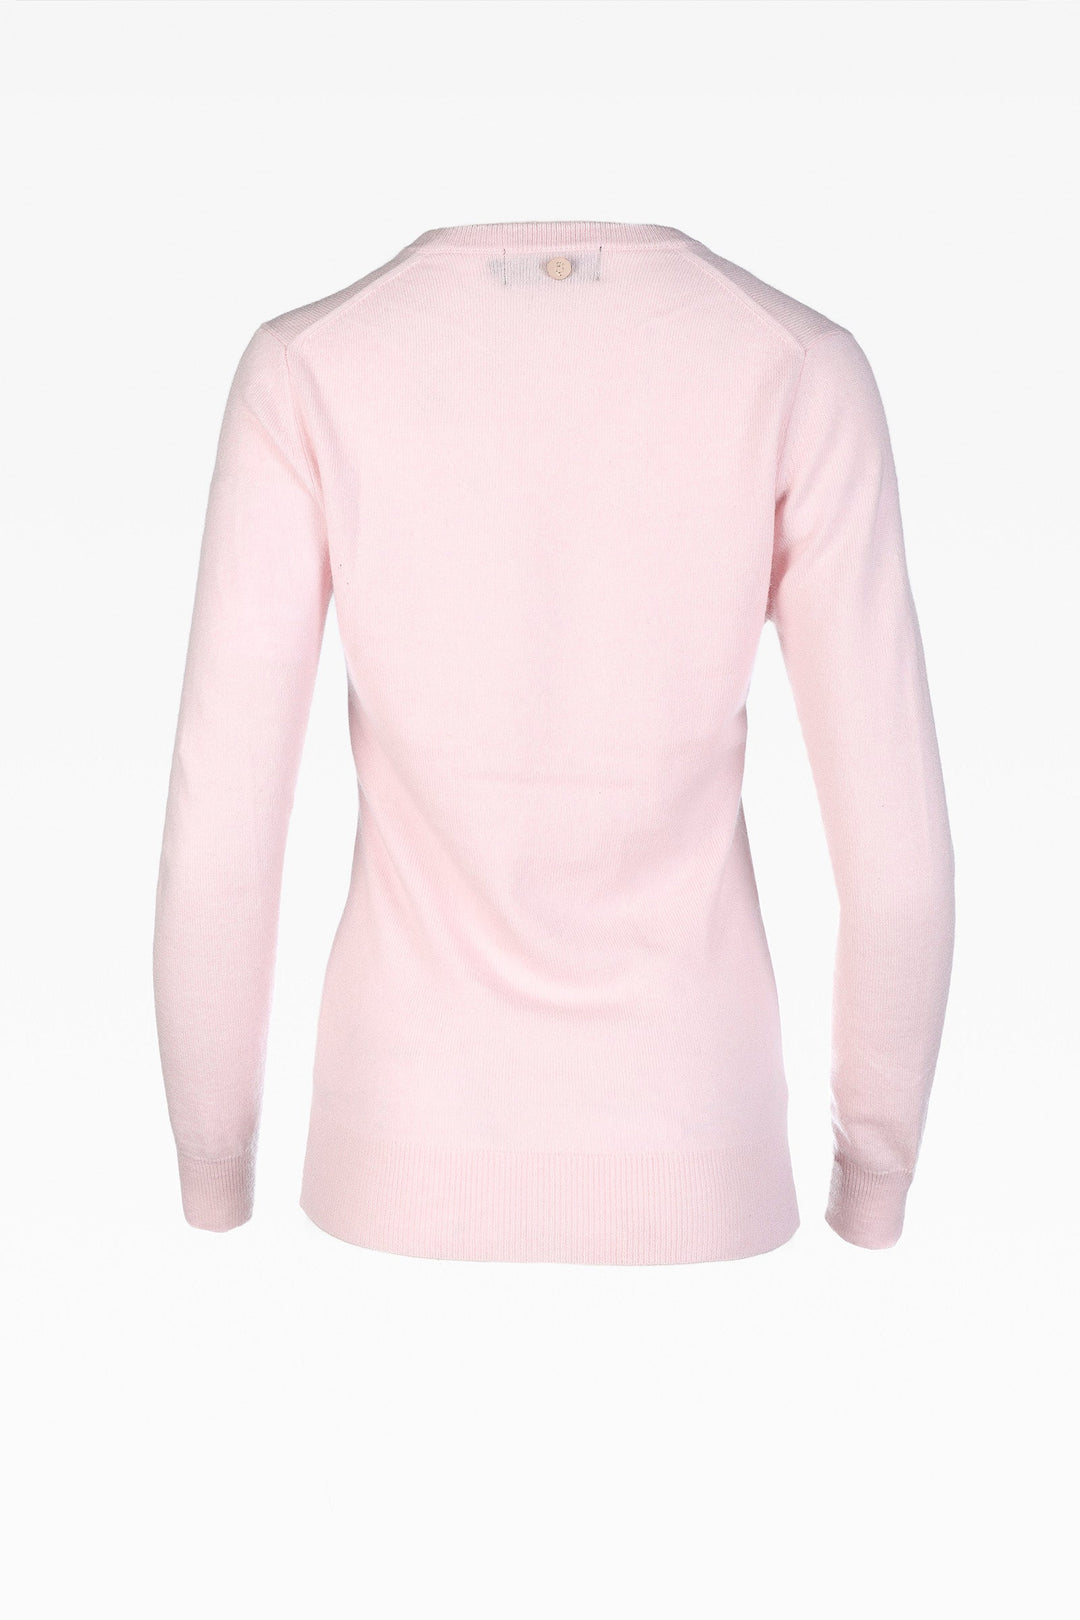 Alice Ladies Cashmere V-Neck Jumper in Nurture Pink: Sizes XS-XL